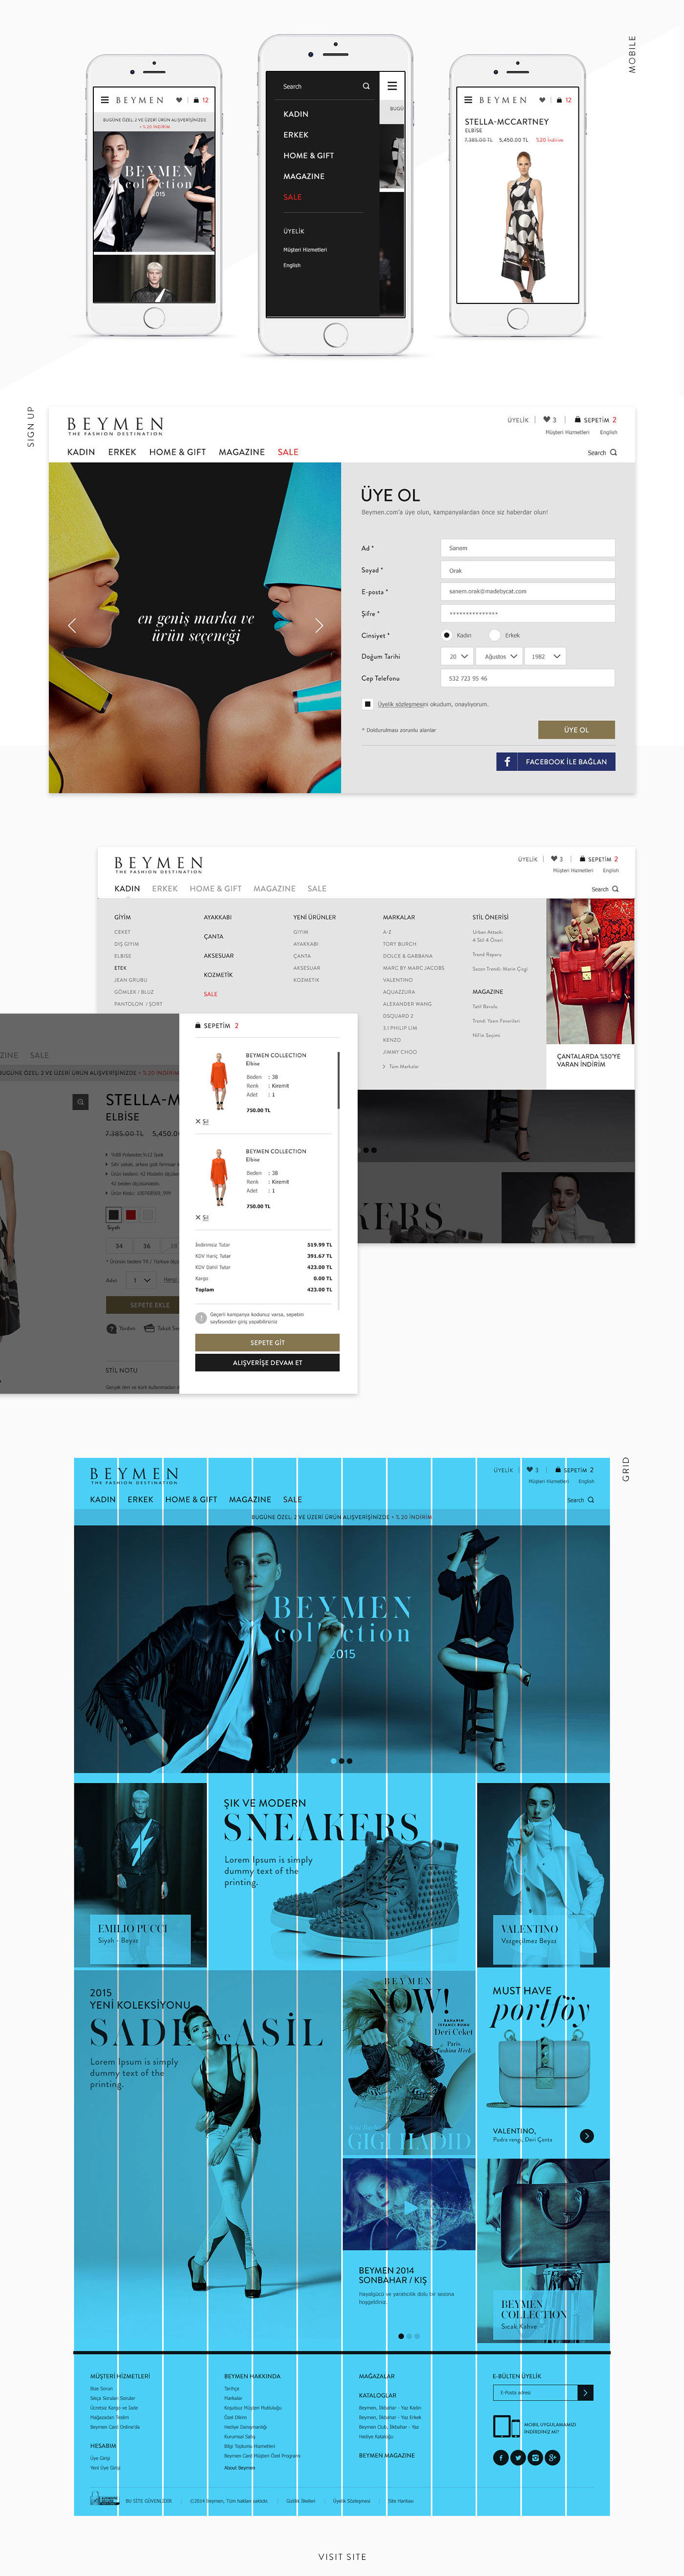 Responsive e-commerce beymen site Shopping luxury brand black White